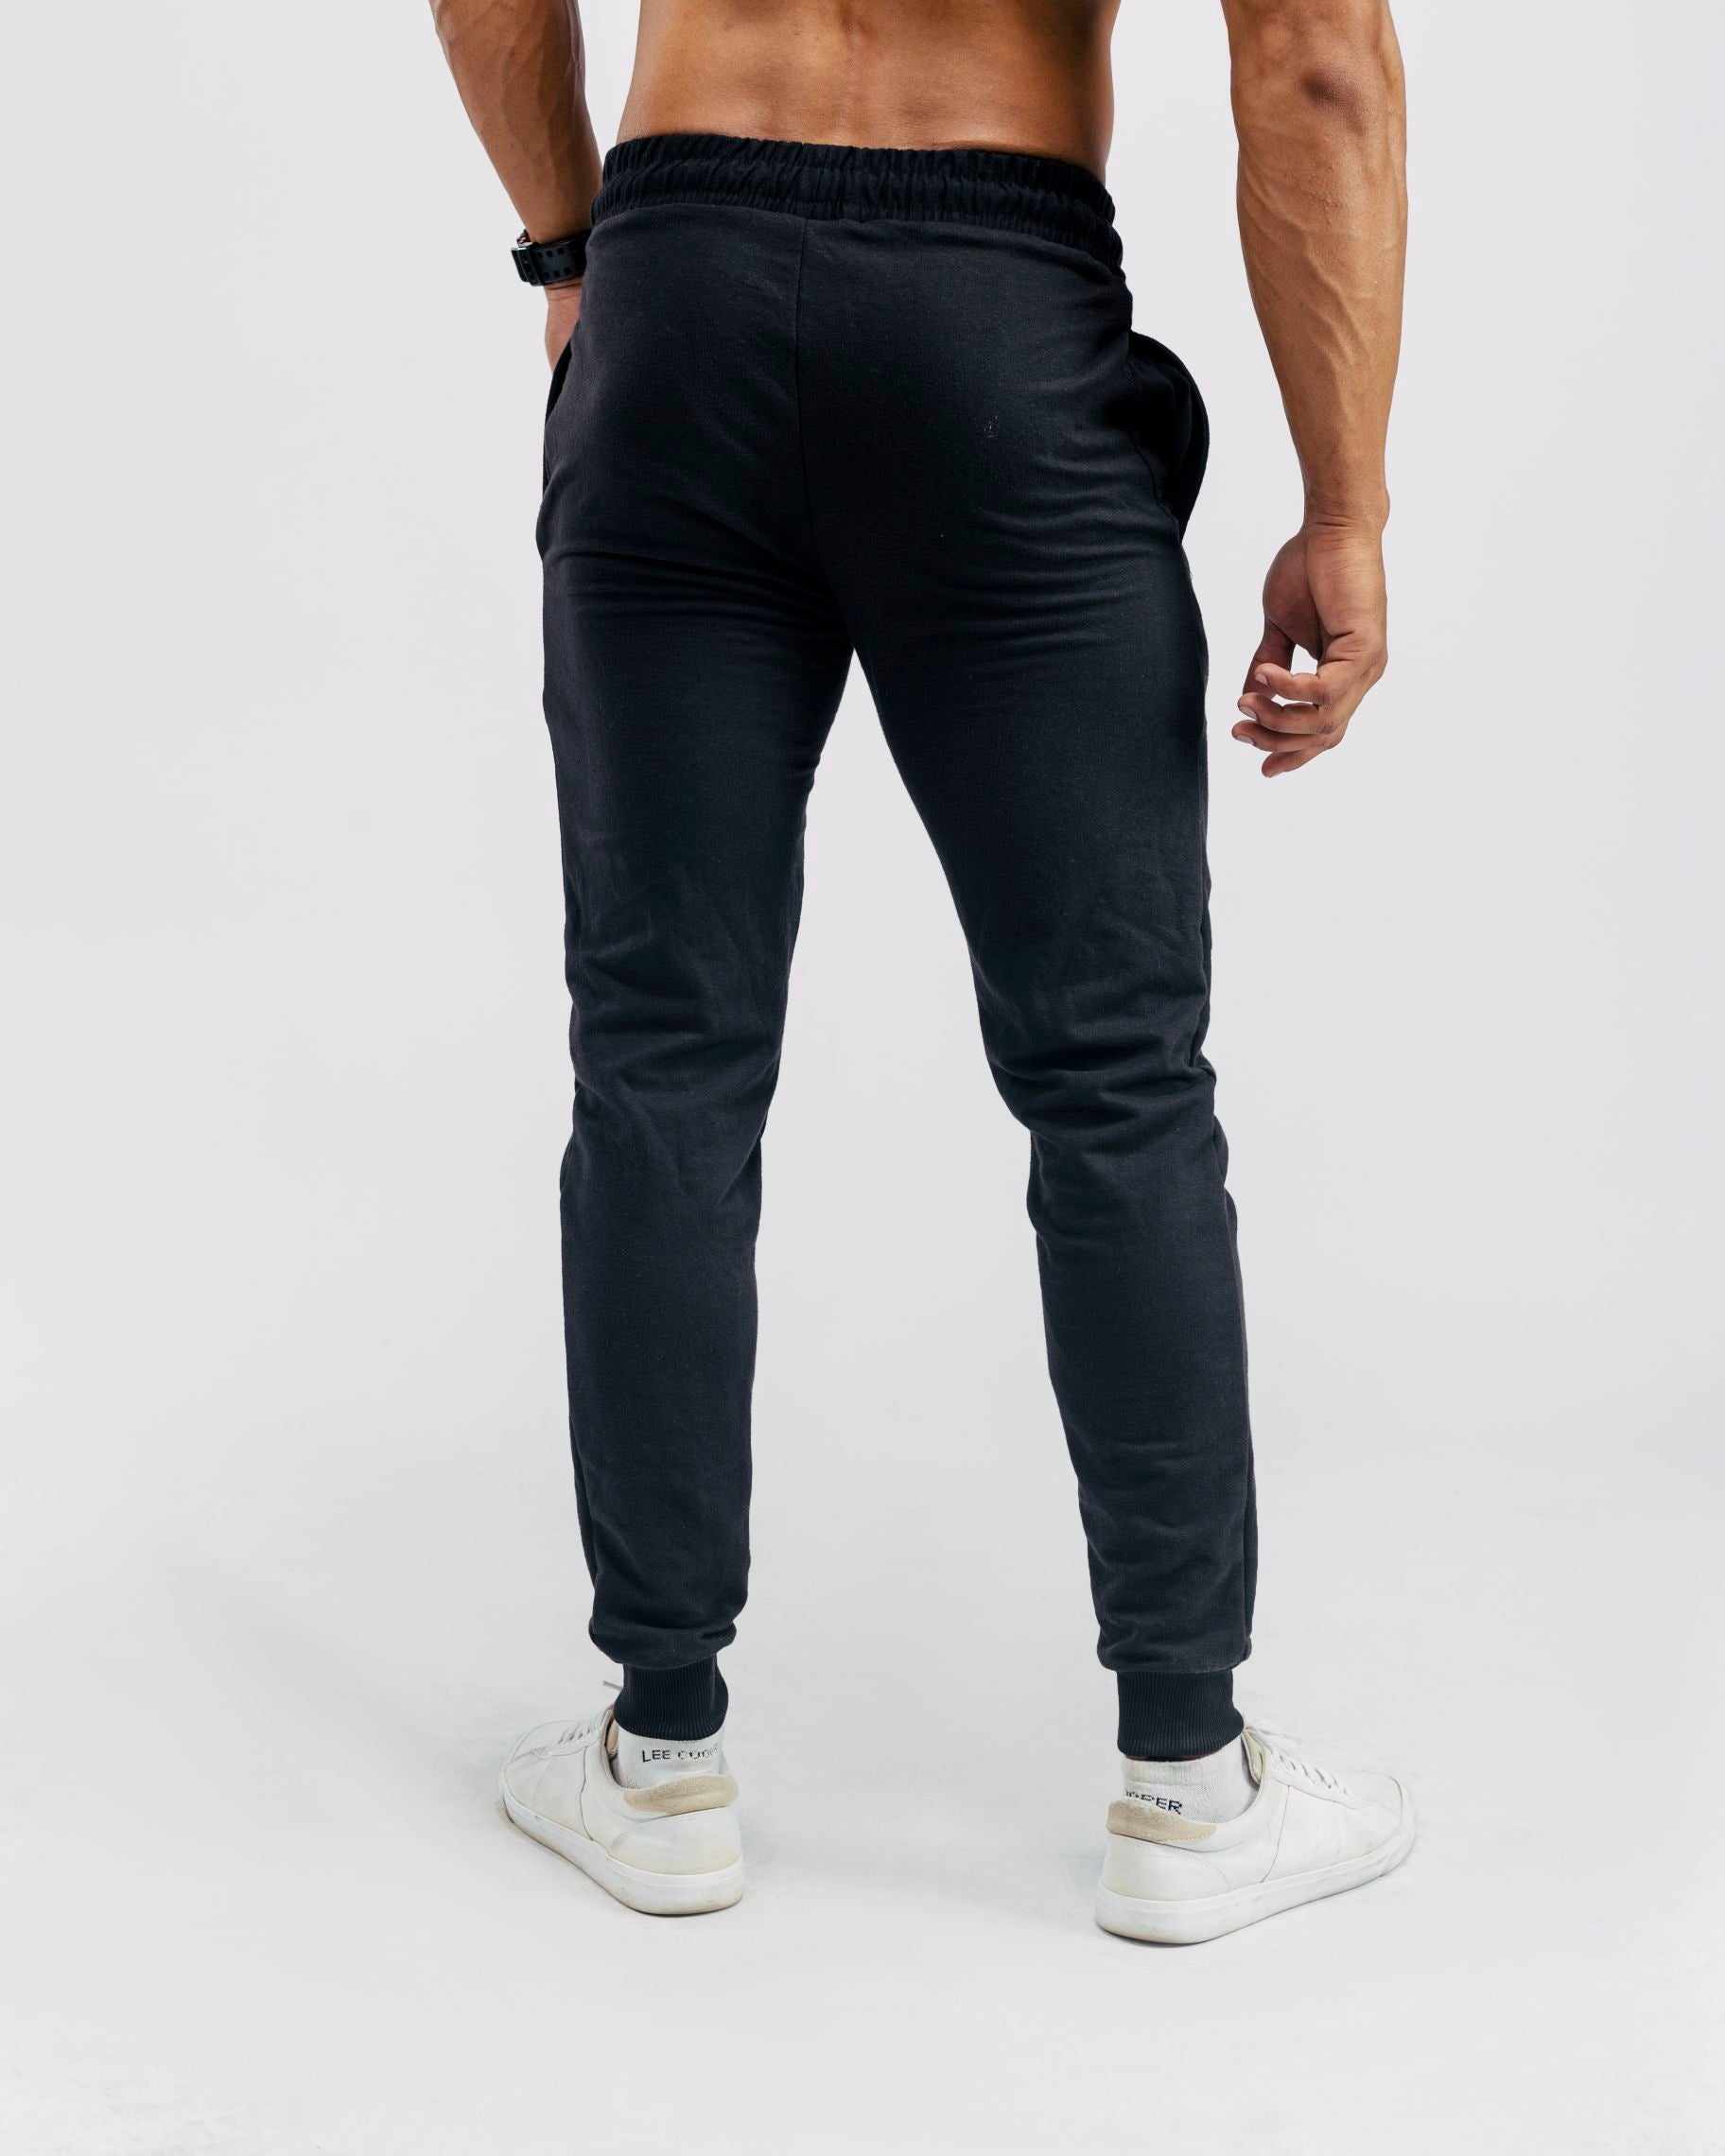 Essential Black Trouser